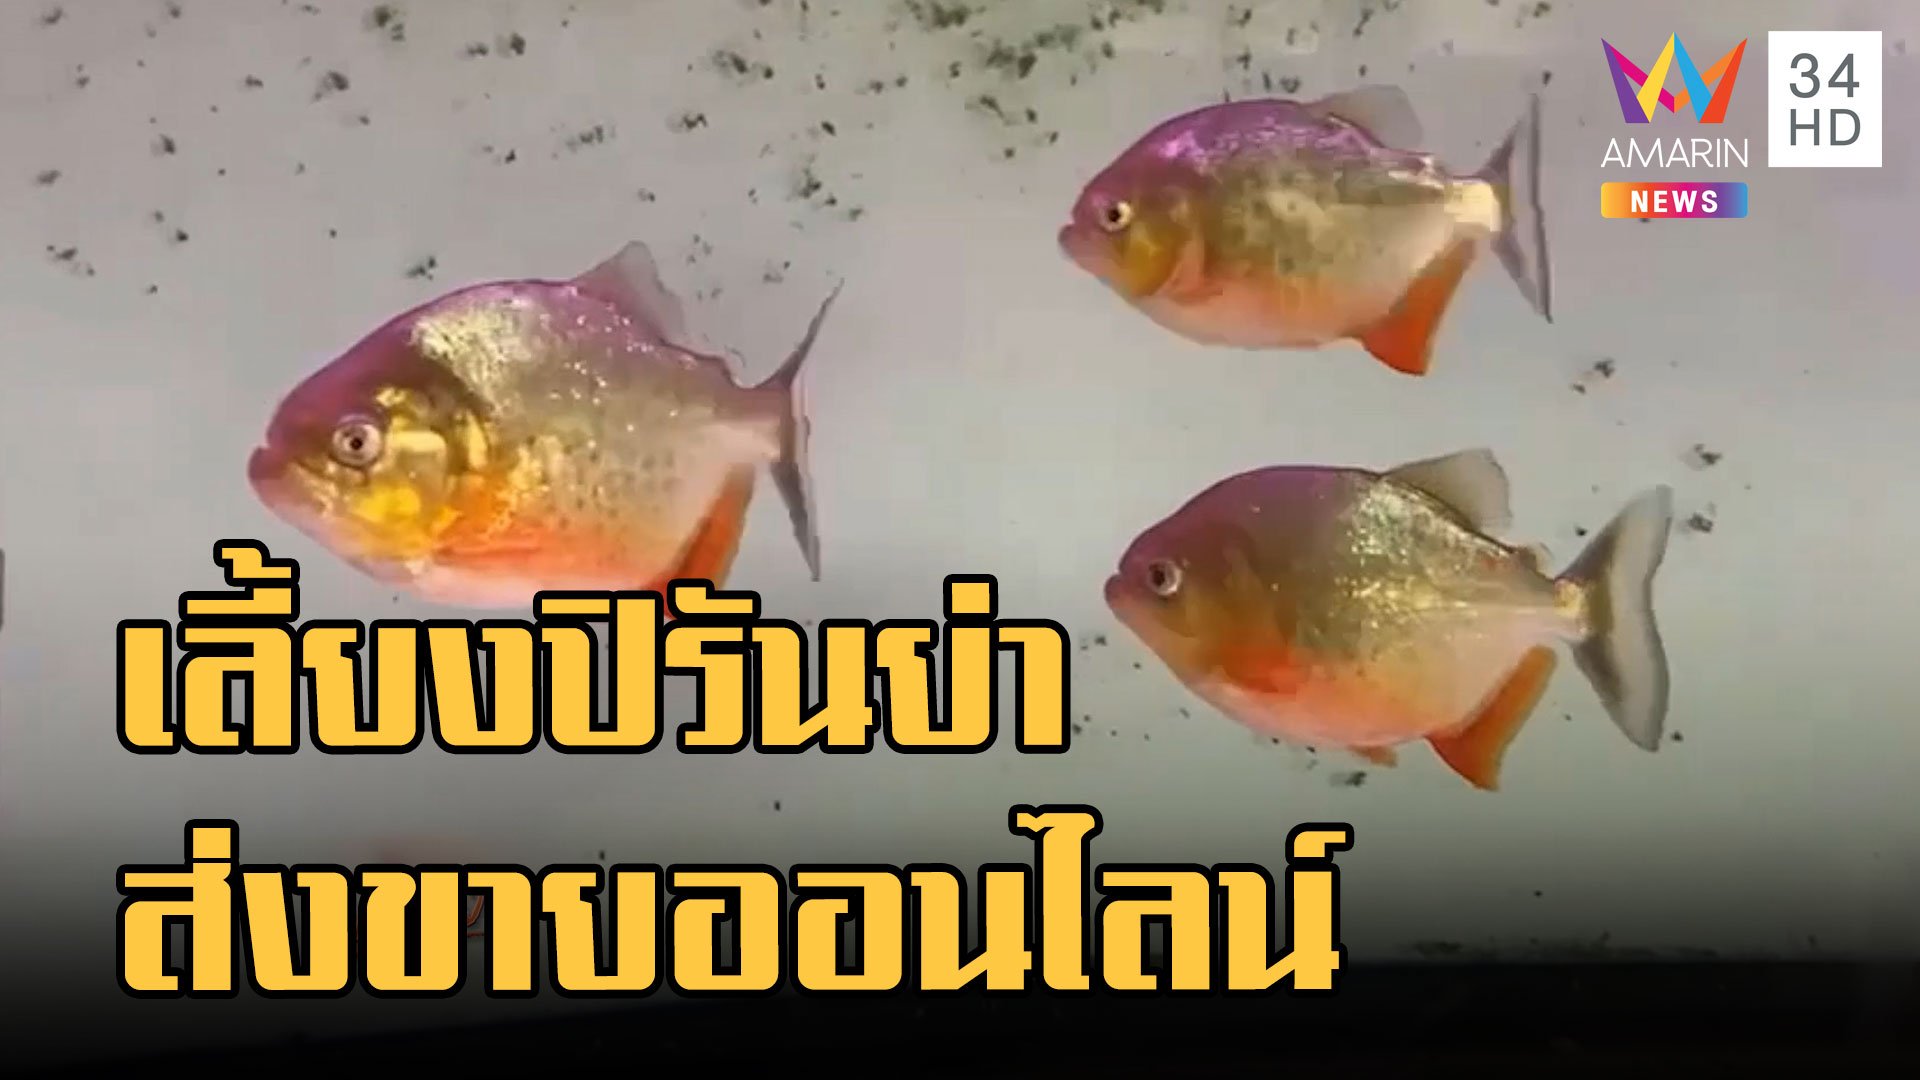 จับหนุ่มแอบขาย "ปลาปิรันย่า" ออนไลน์ โทษหนักติดคุกปรับเป็นล้าน | ข่าวอรุณอมรินทร์ | 20 ก.ย. 65 | AMARIN TVHD34